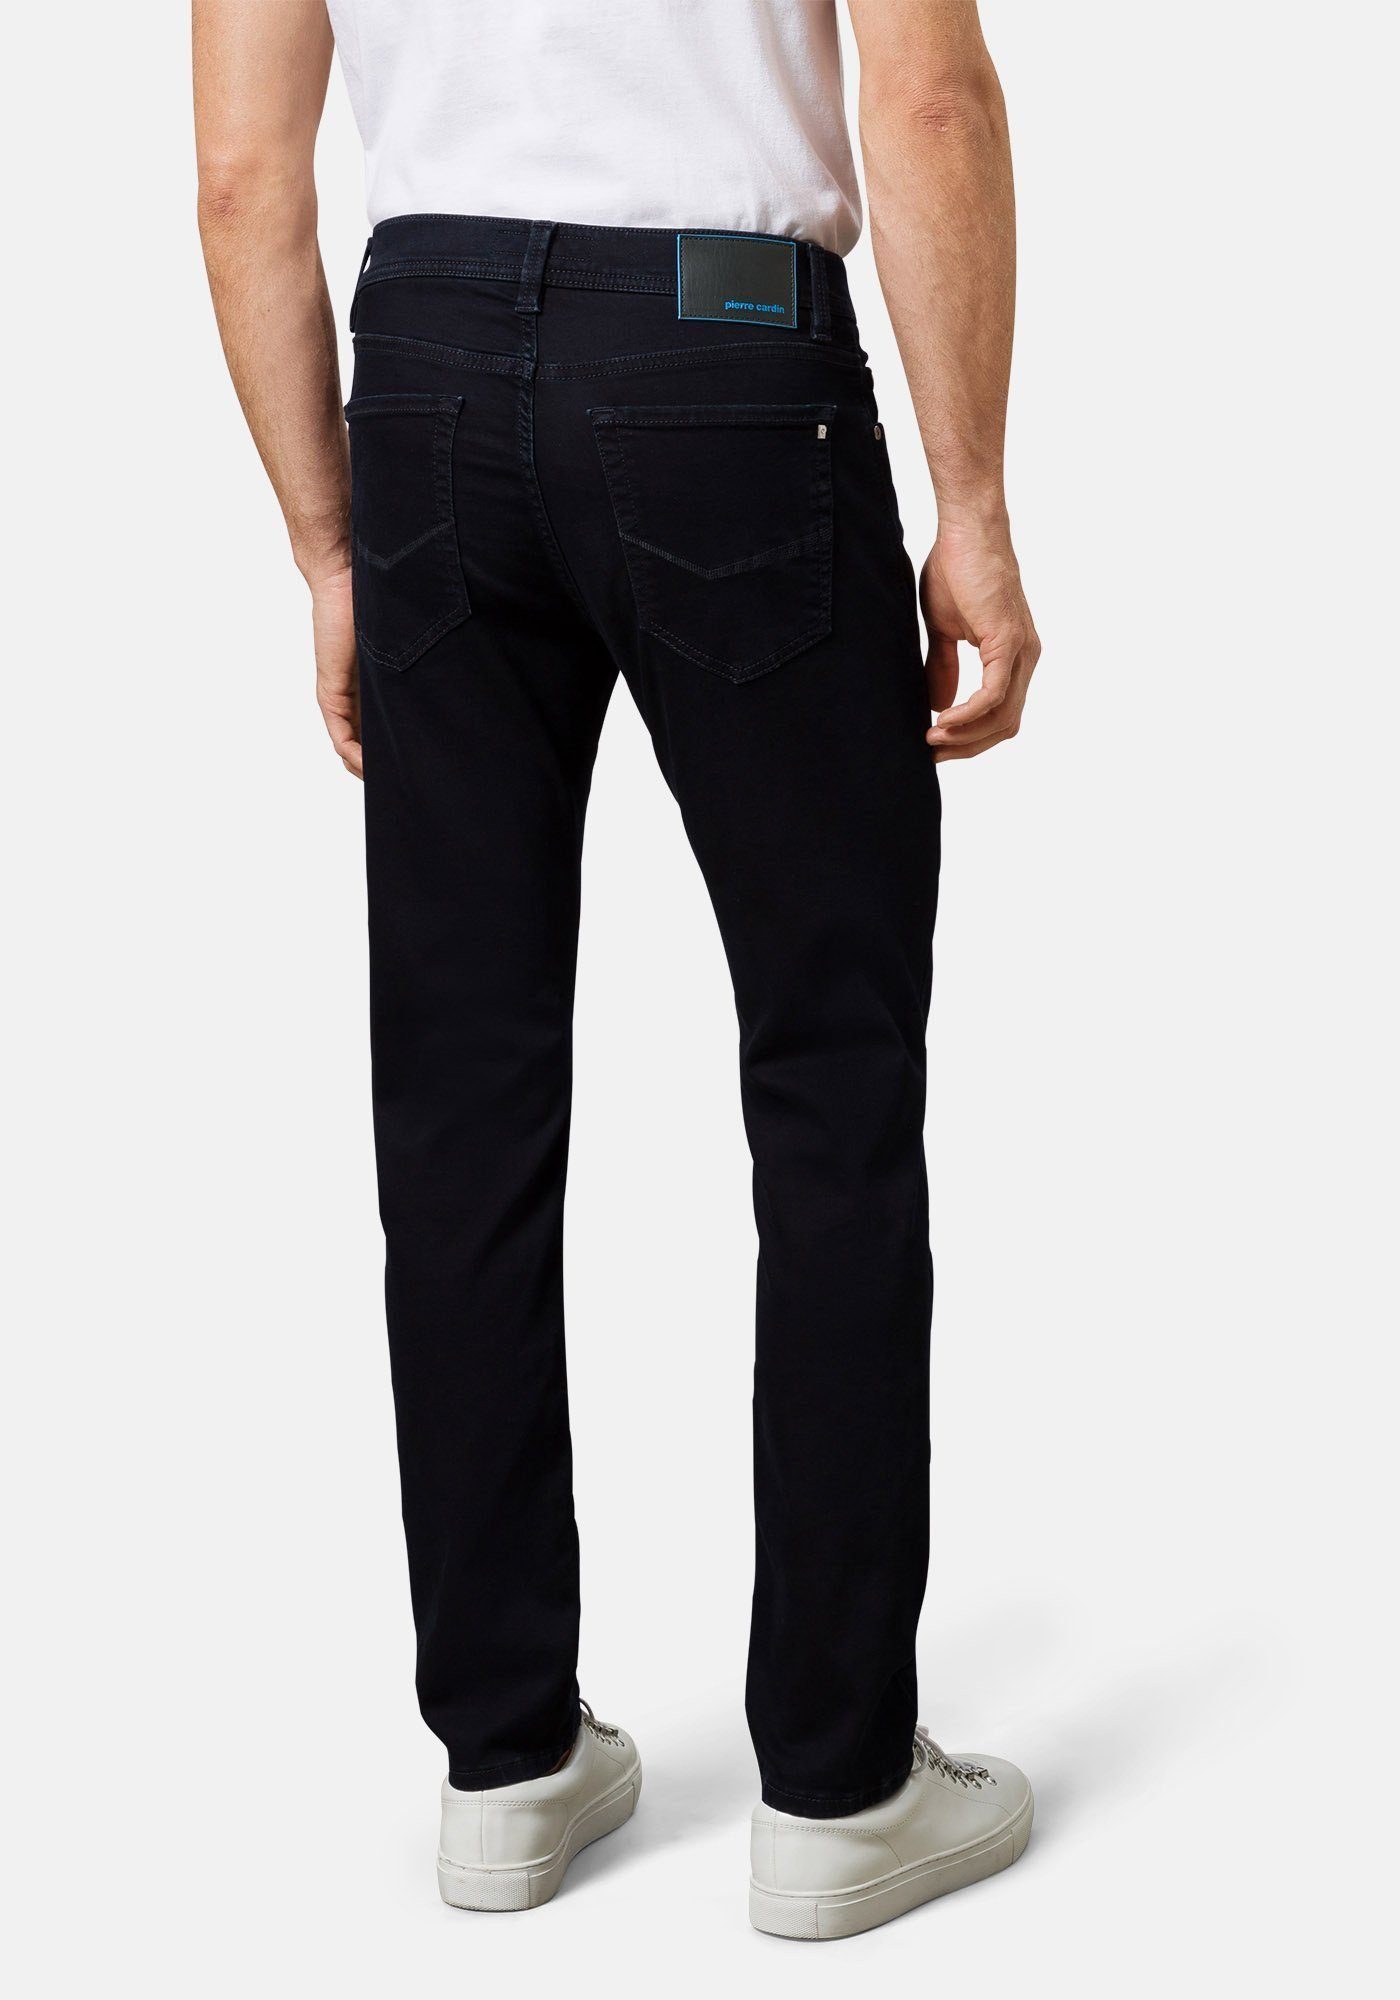 Lyon und bequem Used 5-Pocket-Jeans Futureflex Pierre Tapered Blue/Black Denim, Cardin elastisch